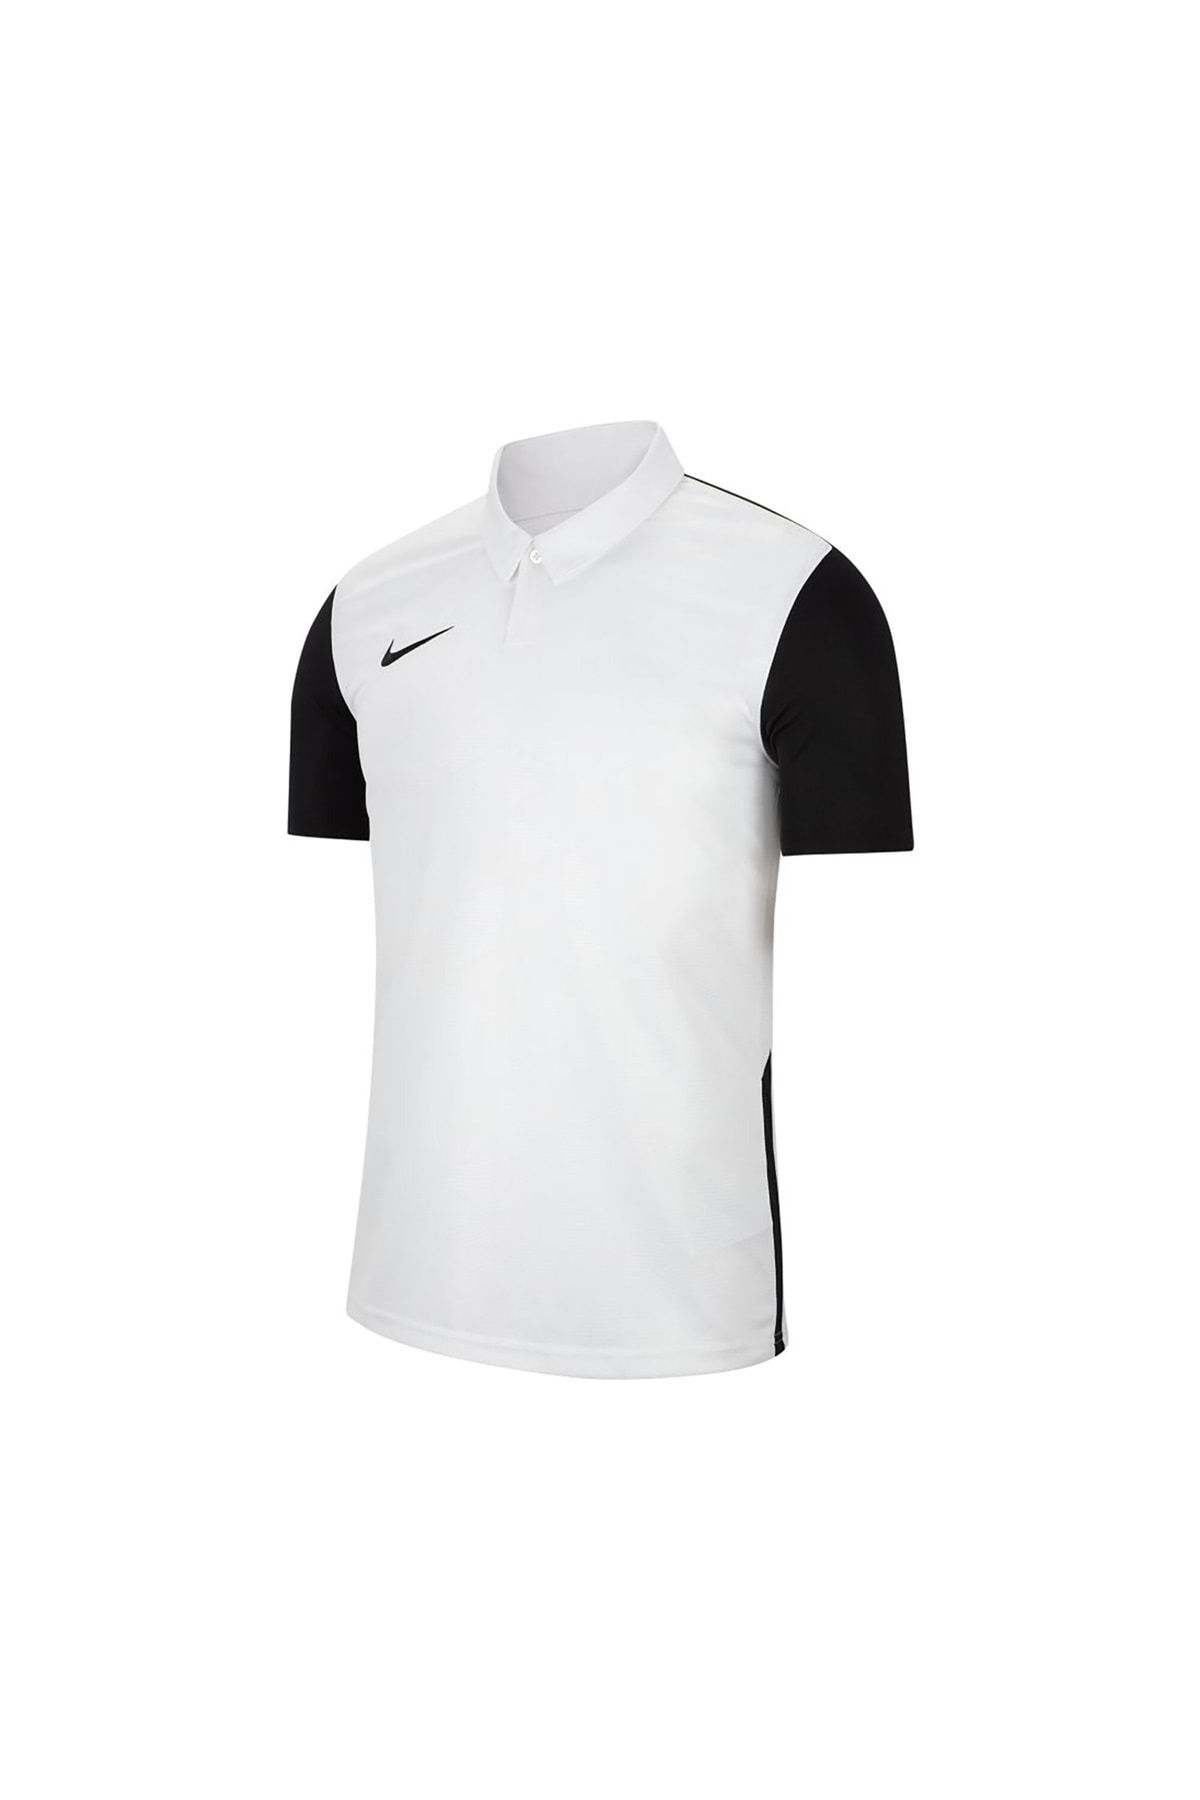 Nike Jersey Trophy Iv Bv6725 T-shirt Polo Yaka Erkek Tişört Beyaz